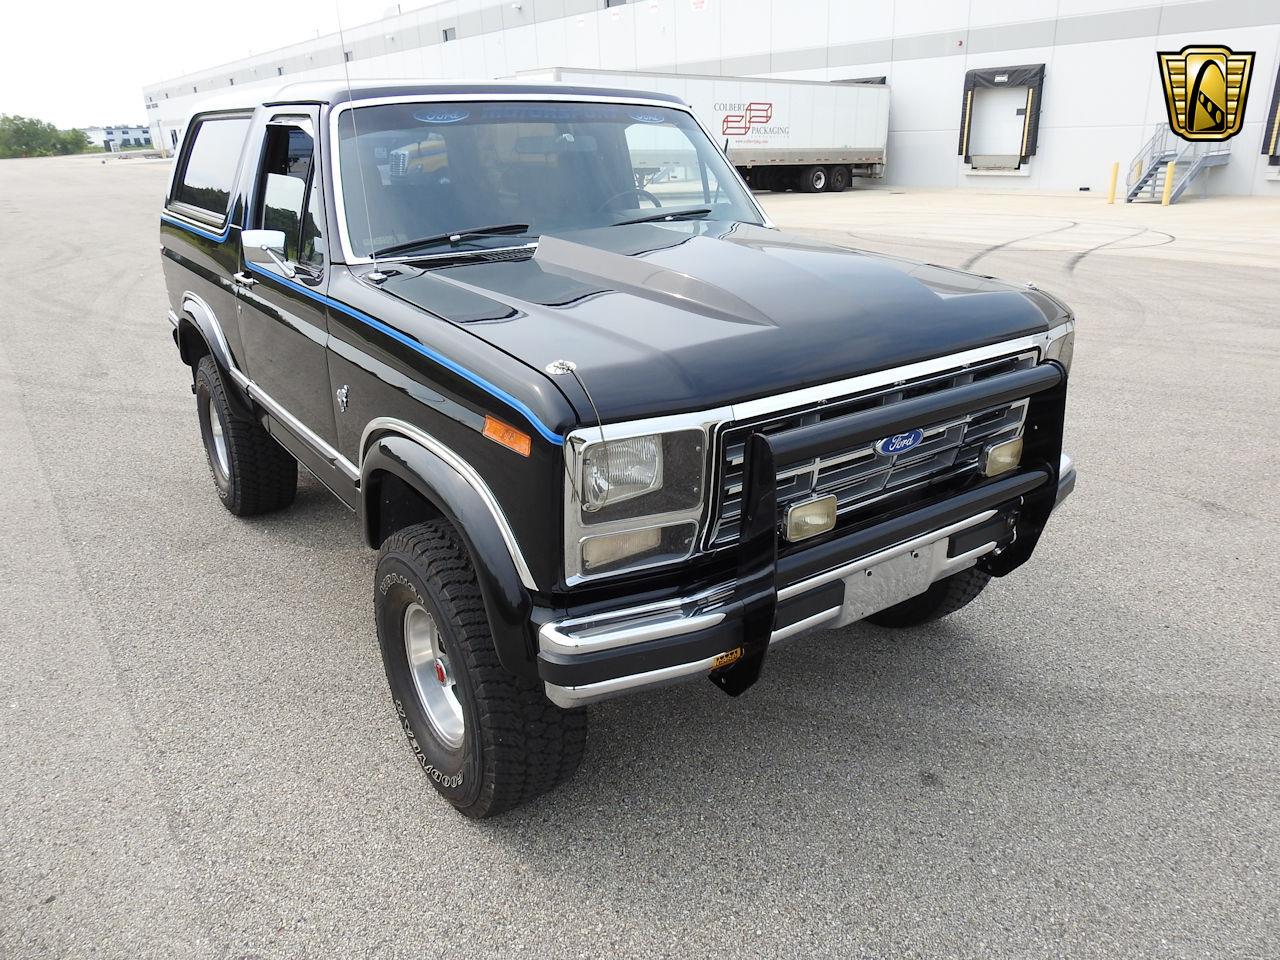 1980 Ford Bronco for Sale | ClassicCars.com | CC-1135085